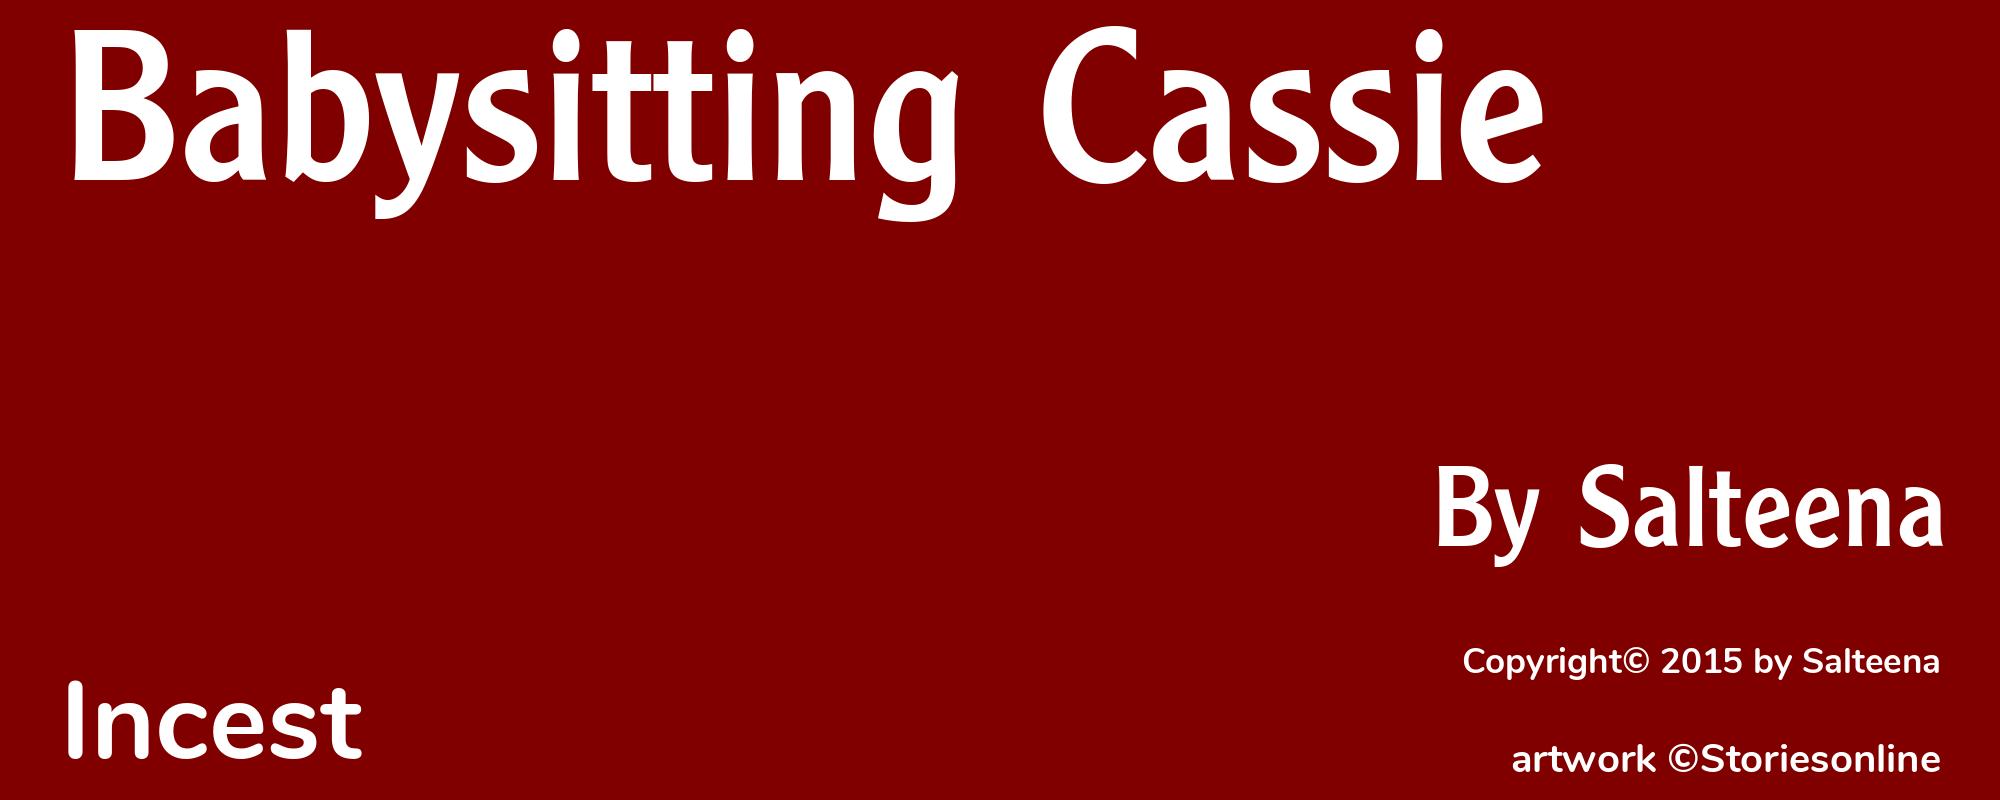 Babysitting Cassie - Cover